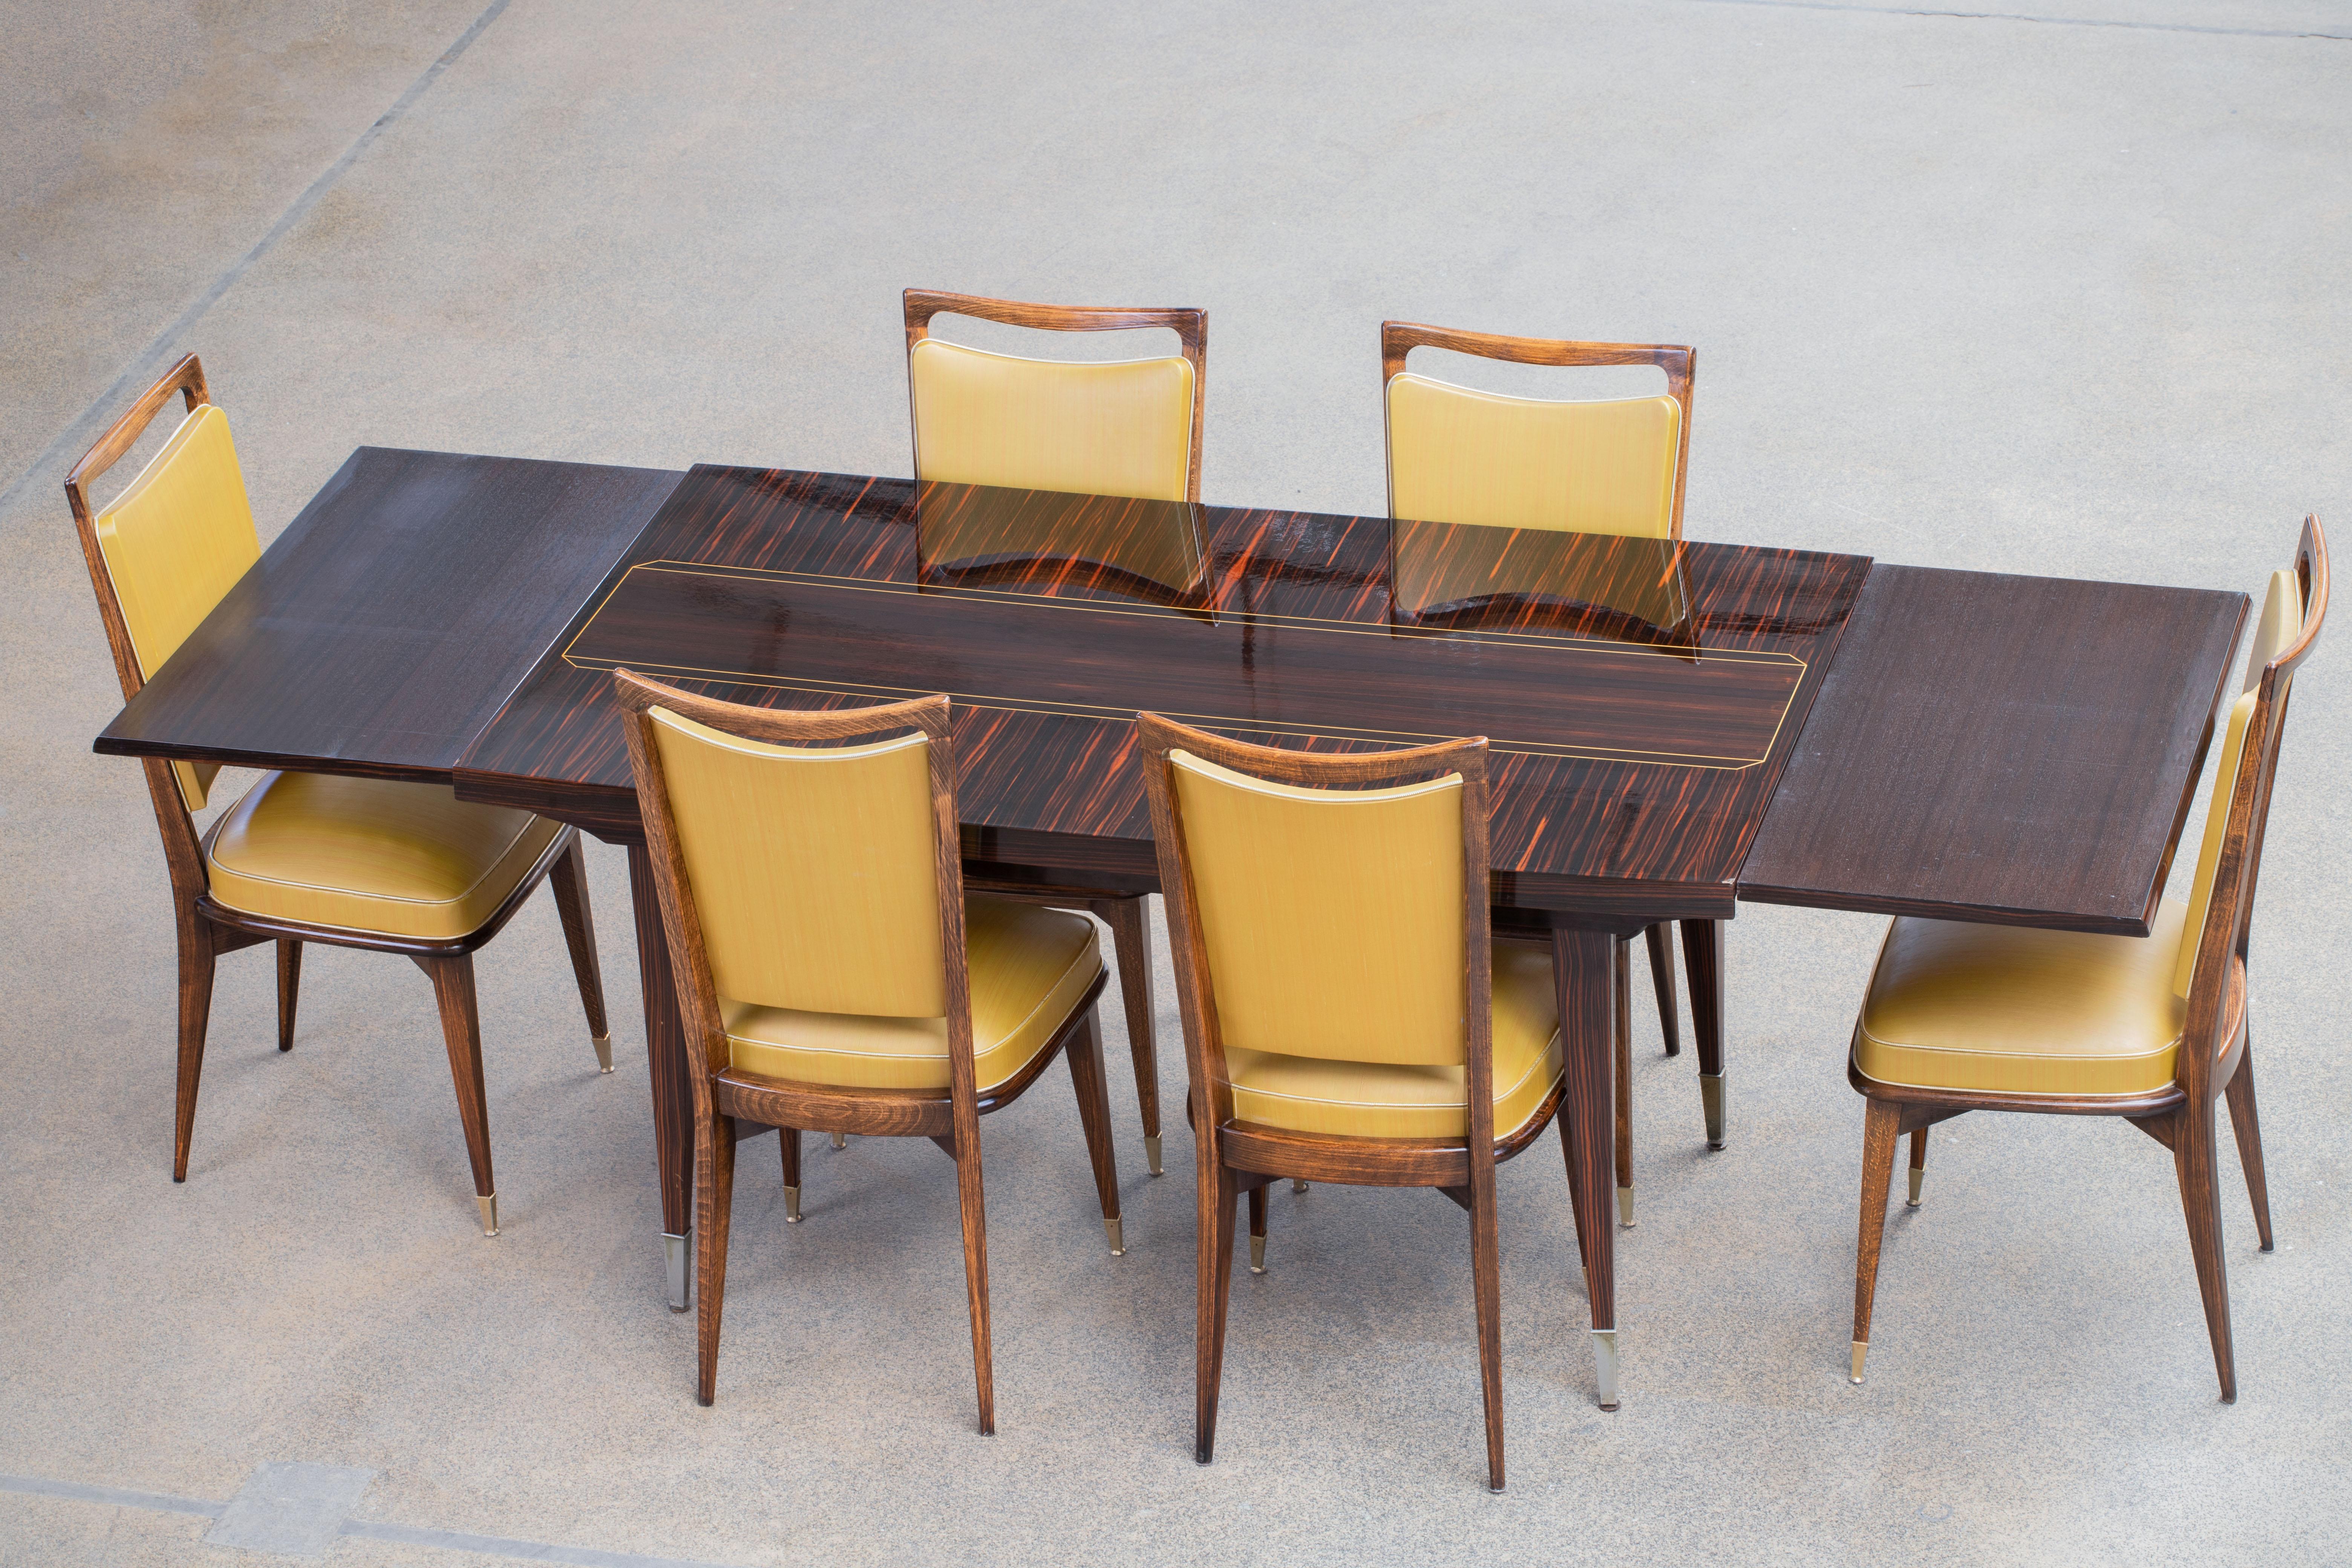 Esstisch, Makassar, Frankreich, 1940er Jahre.

Majestätischer Mitteltisch aus Makassar. Dieser Art-Déco-Tisch zeigt große Handwerkskunst. Der Sockel und die Beine sind wunderschön detailliert. Dieser Tisch hat ein elegantes Aussehen. Dieses Design